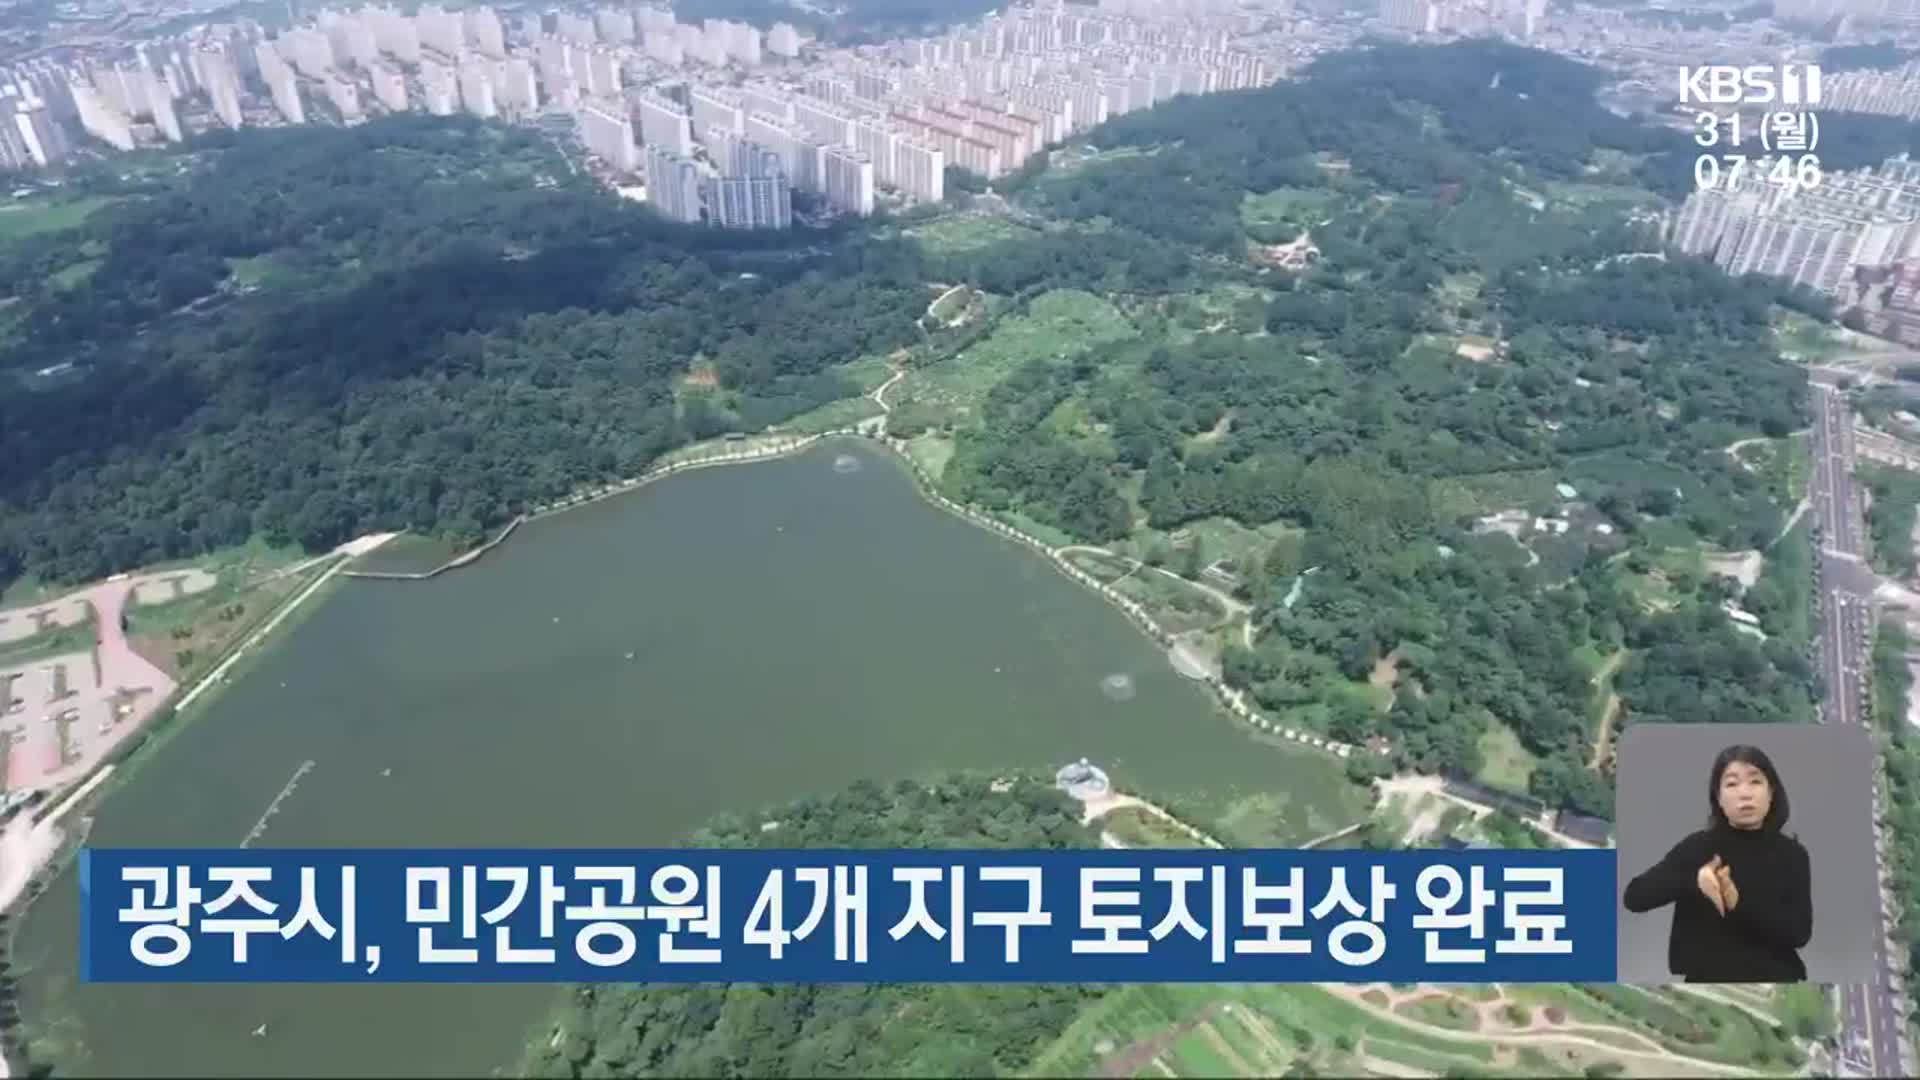 광주시, 민간공원 4개 지구 토지보상 완료